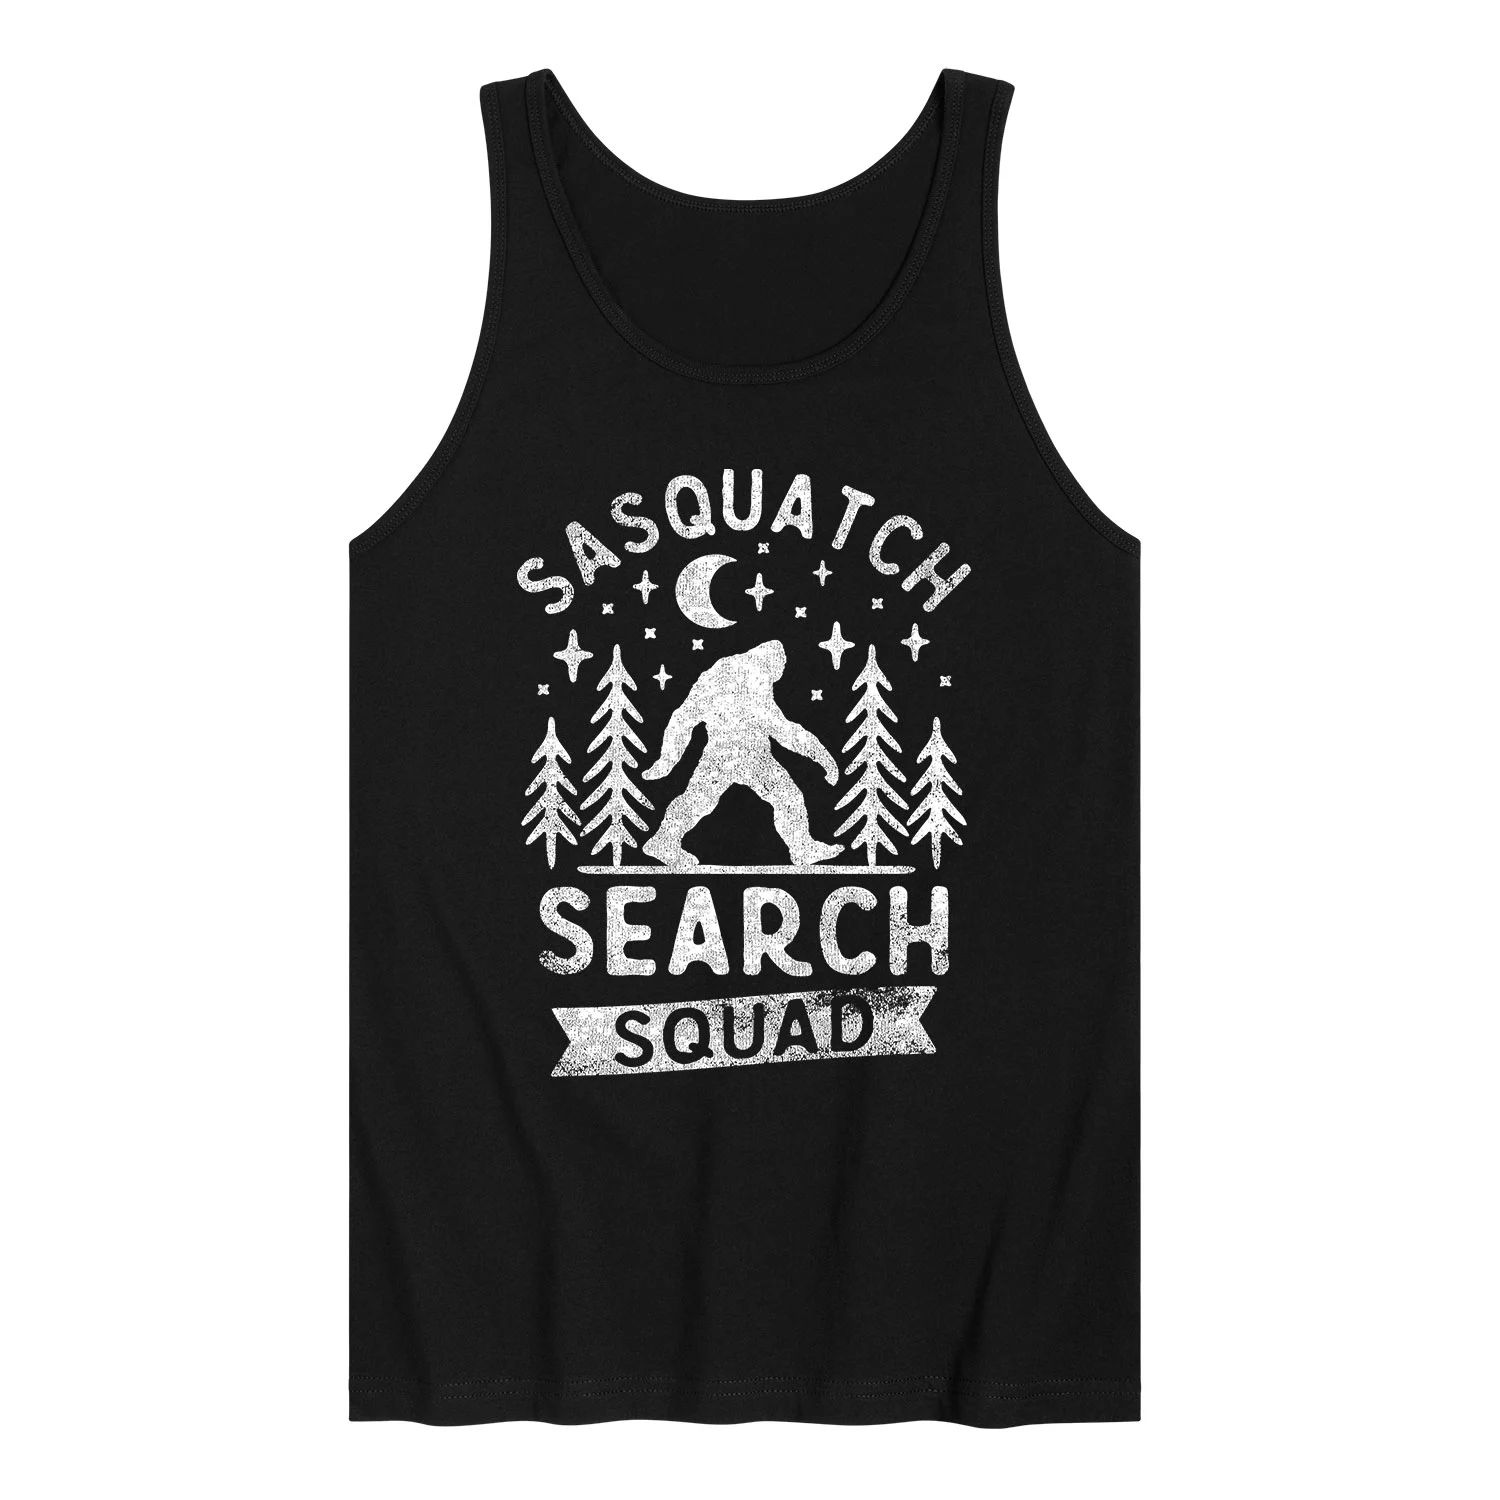 Мужская майка с графическим рисунком Sasquatch Search Squad Licensed Character